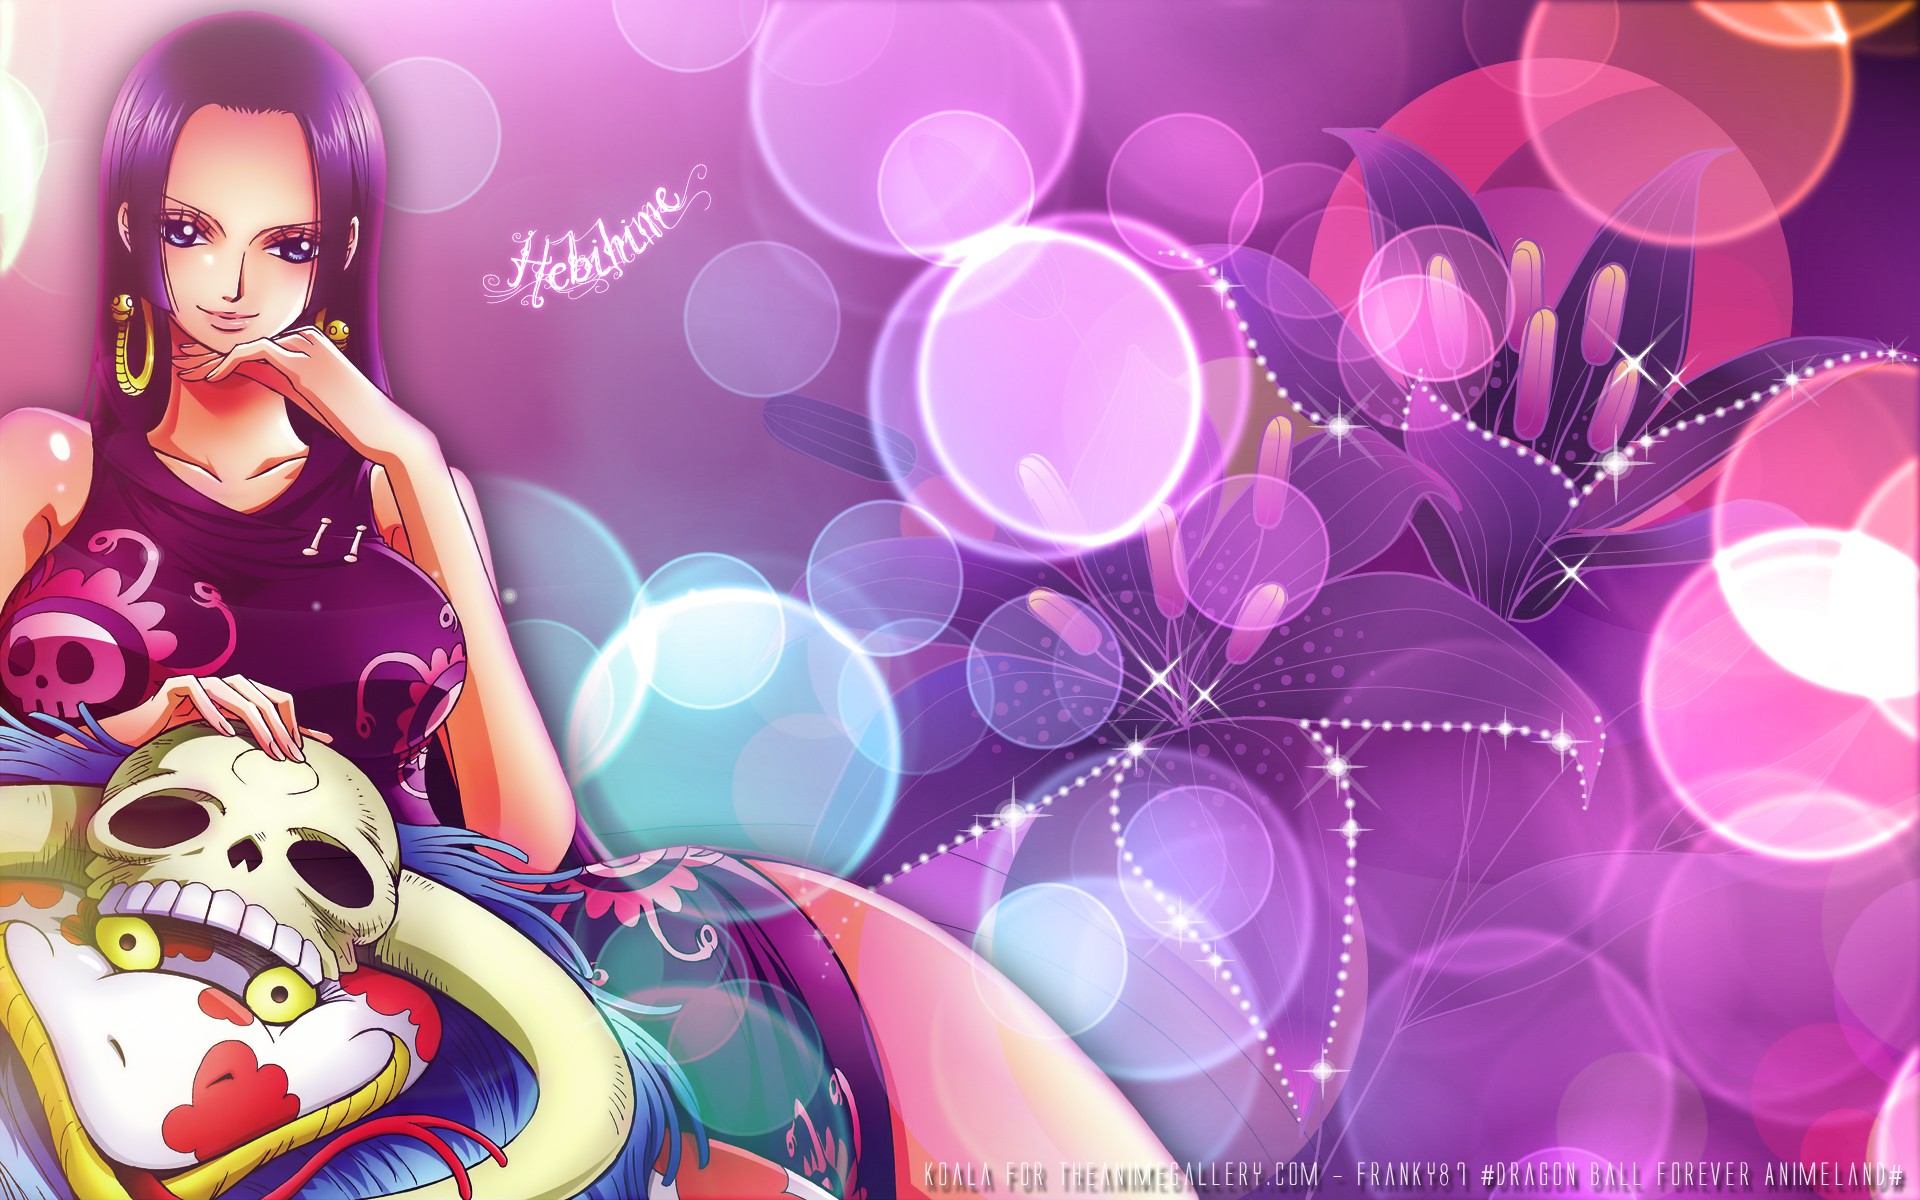 보아 핸콕의 hd 벽지,제비꽃,보라색,분홍,cg 삽화,그래픽 디자인